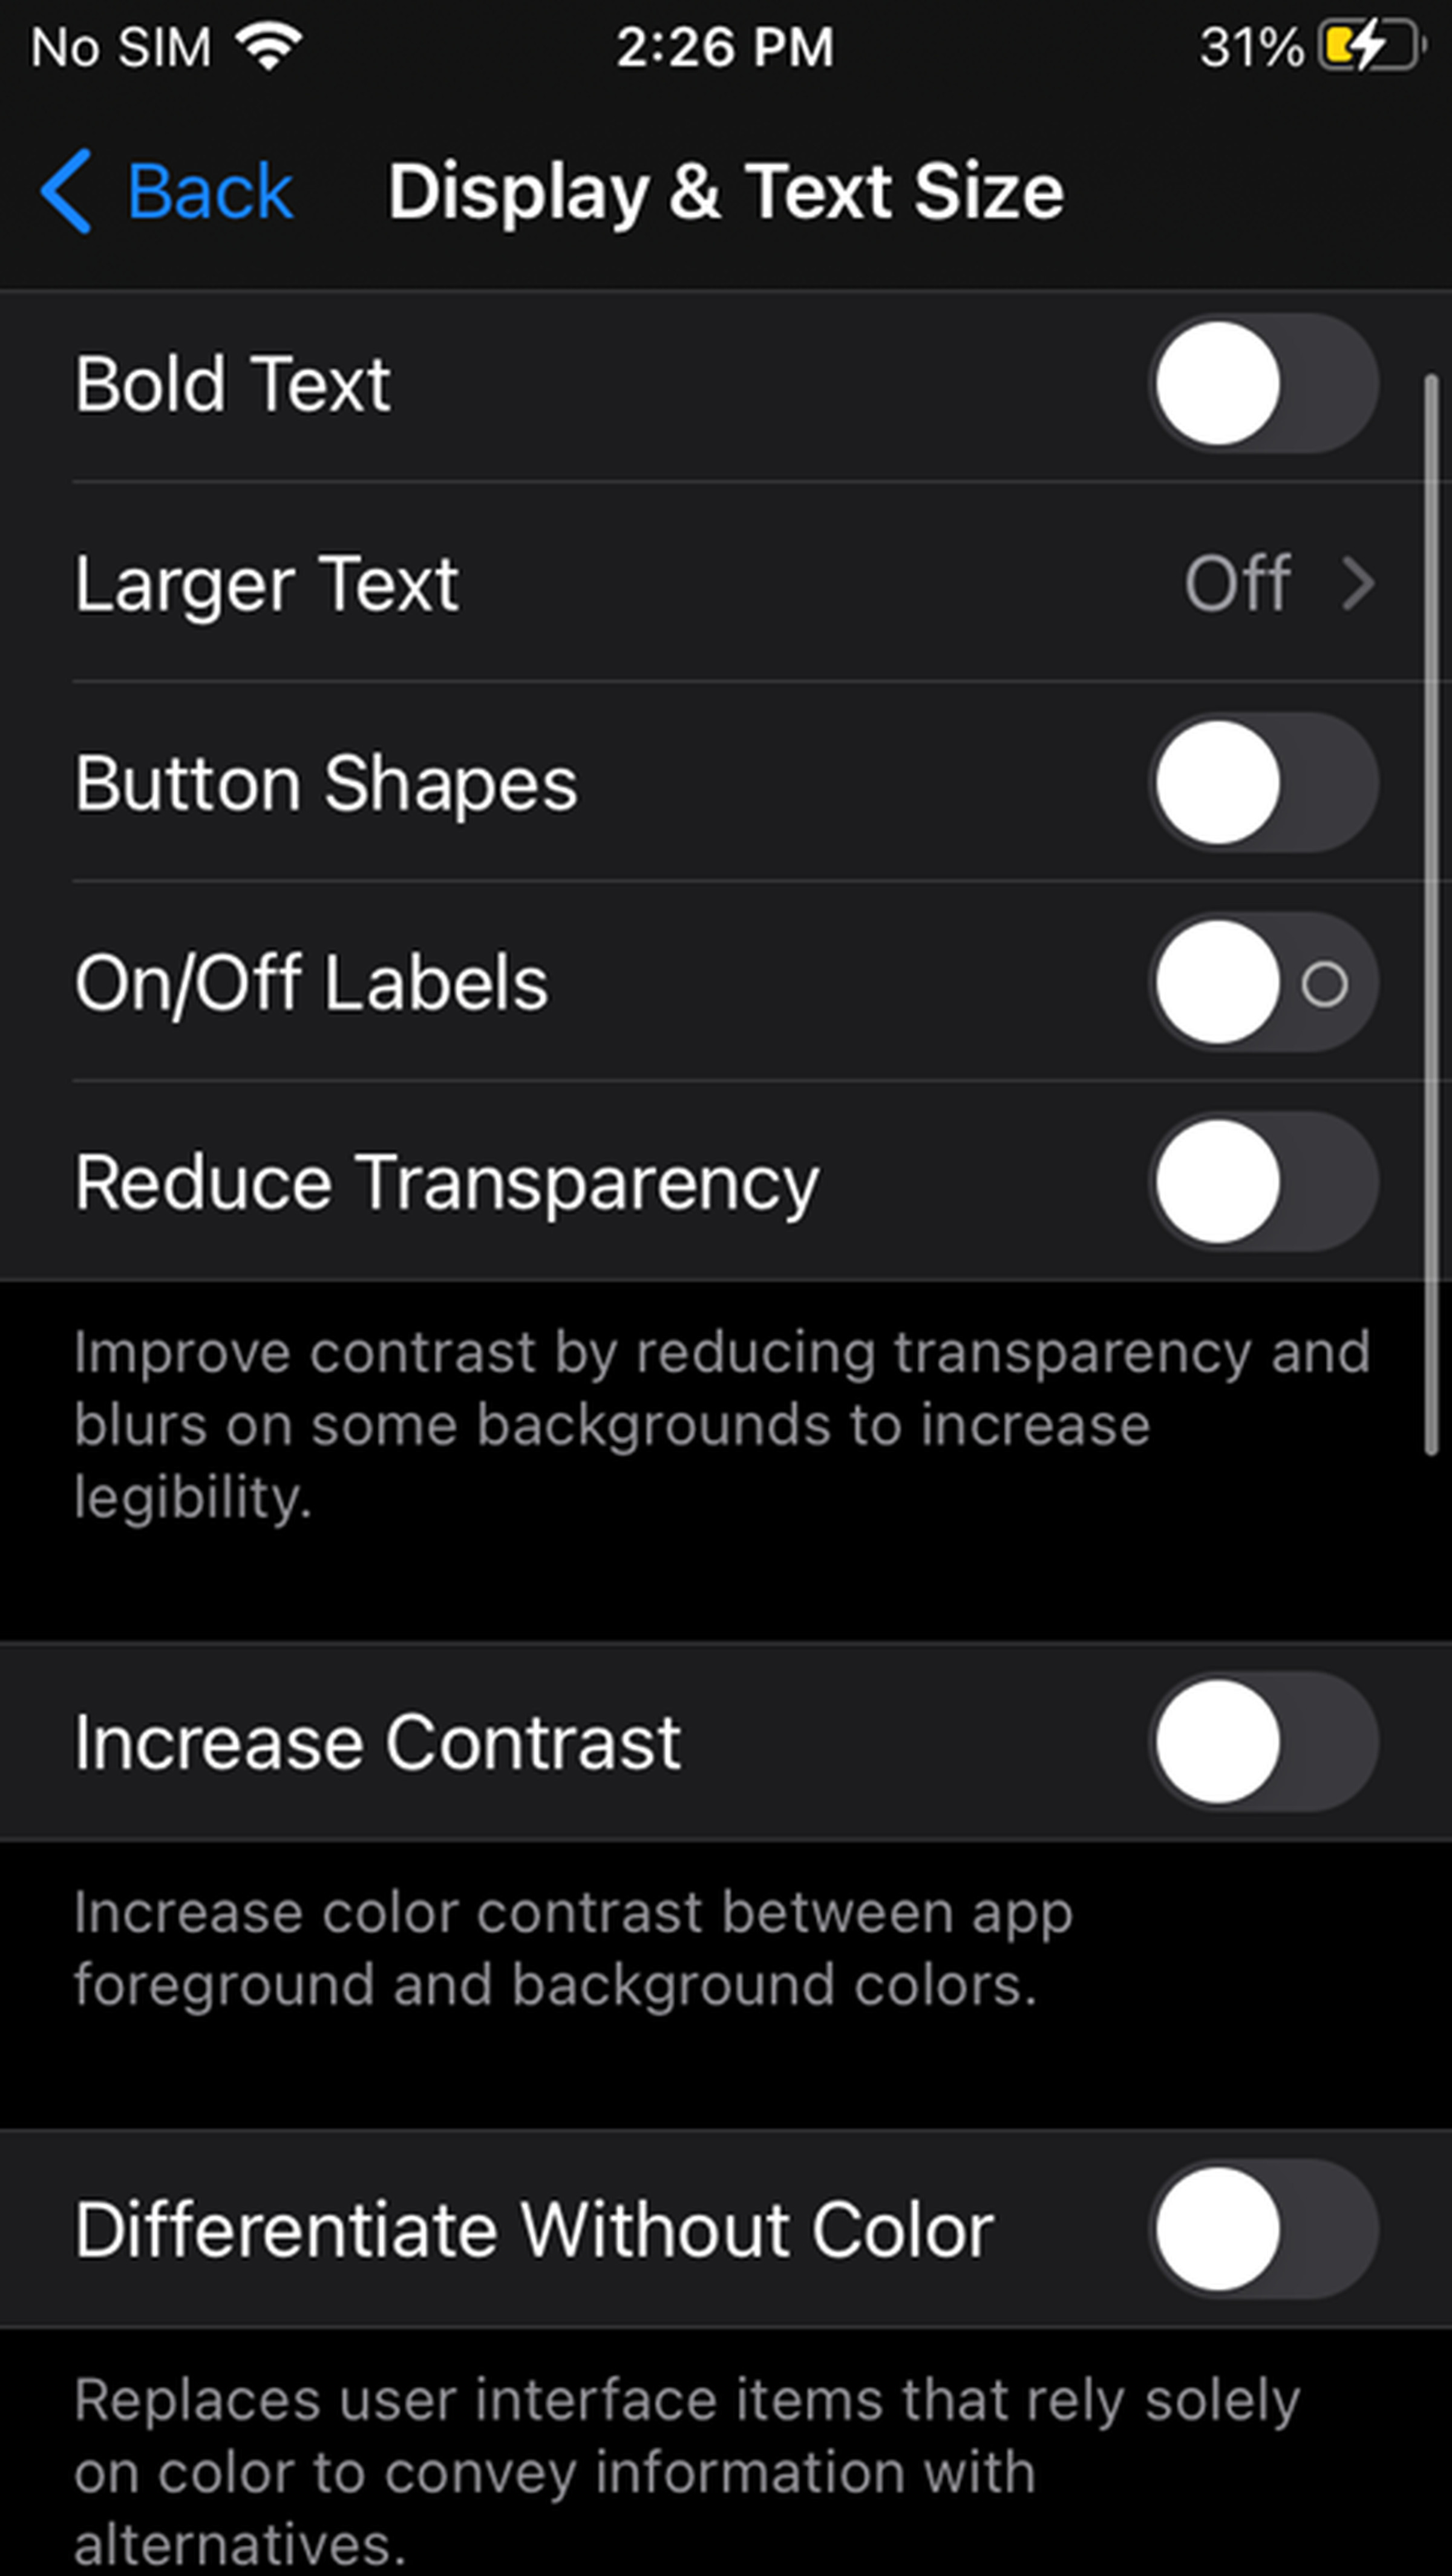 Display &amp; Text Size menu